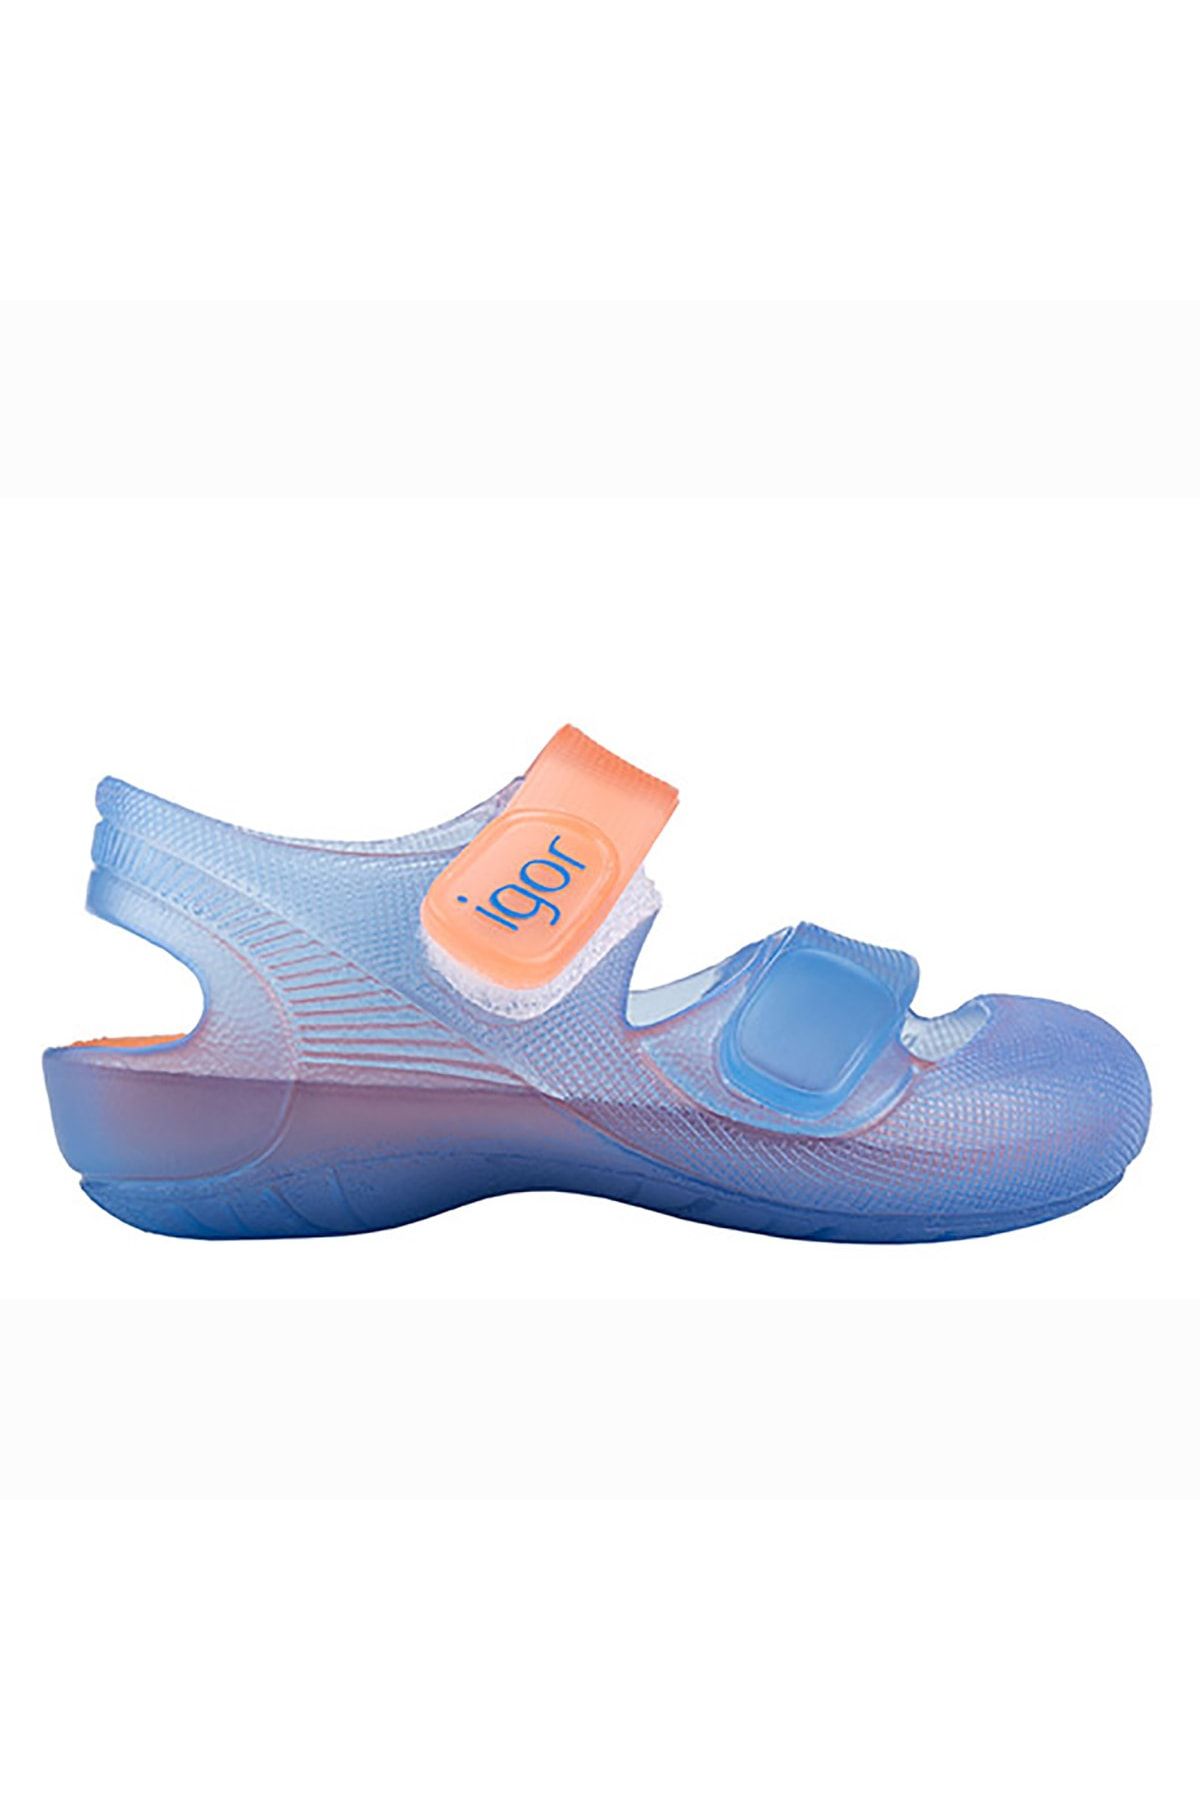 IGOR S10146 Bondi Bicolor Plaj Kız/erkek Çocuk Sandalet Deniz Ayakkabısı Mavi - Turuncu